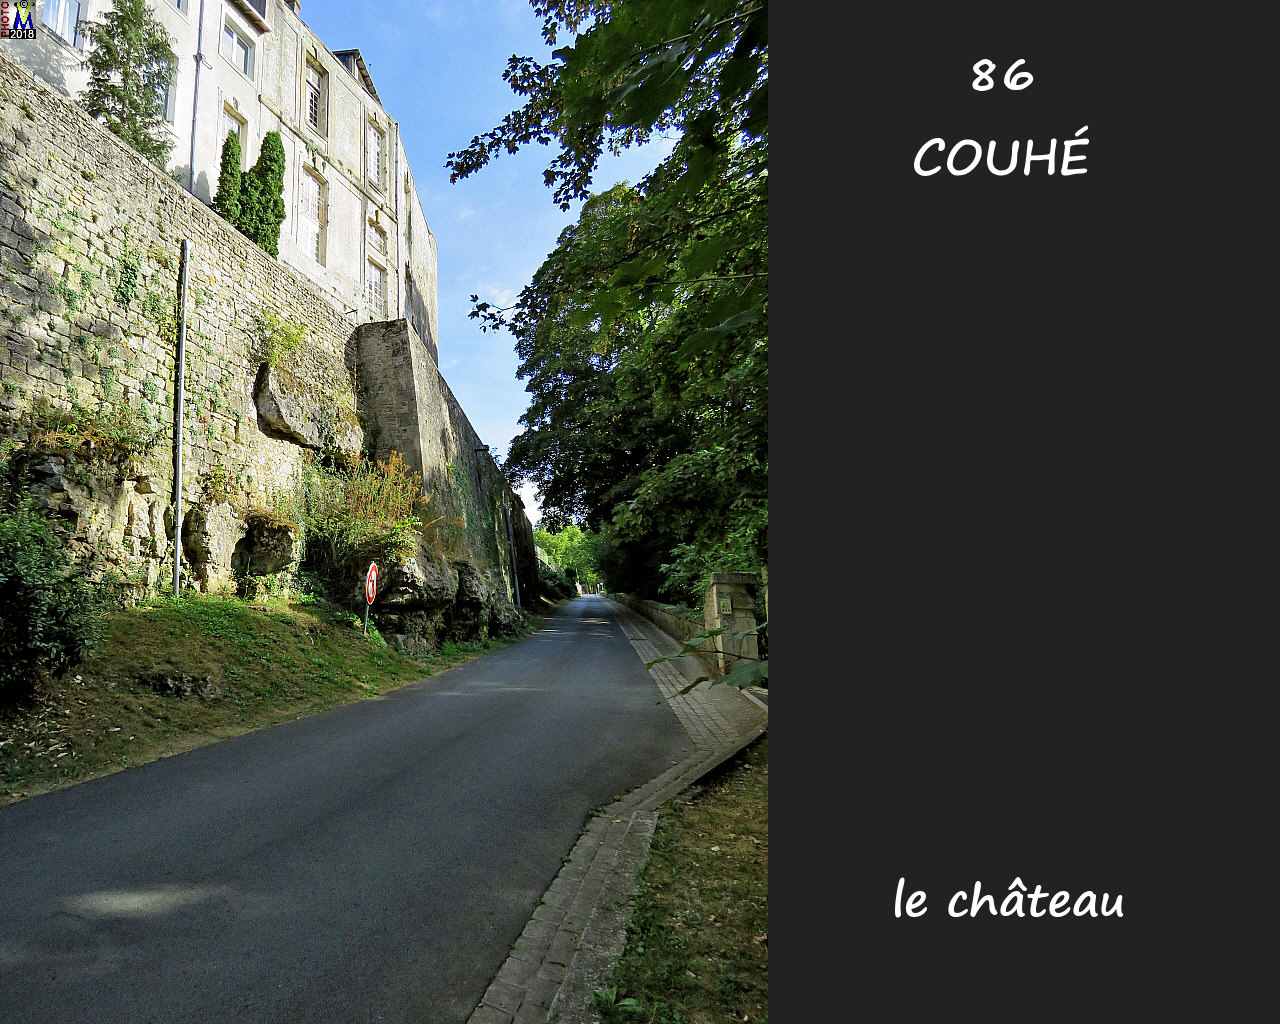 86COUHE_chateau_1006.jpg